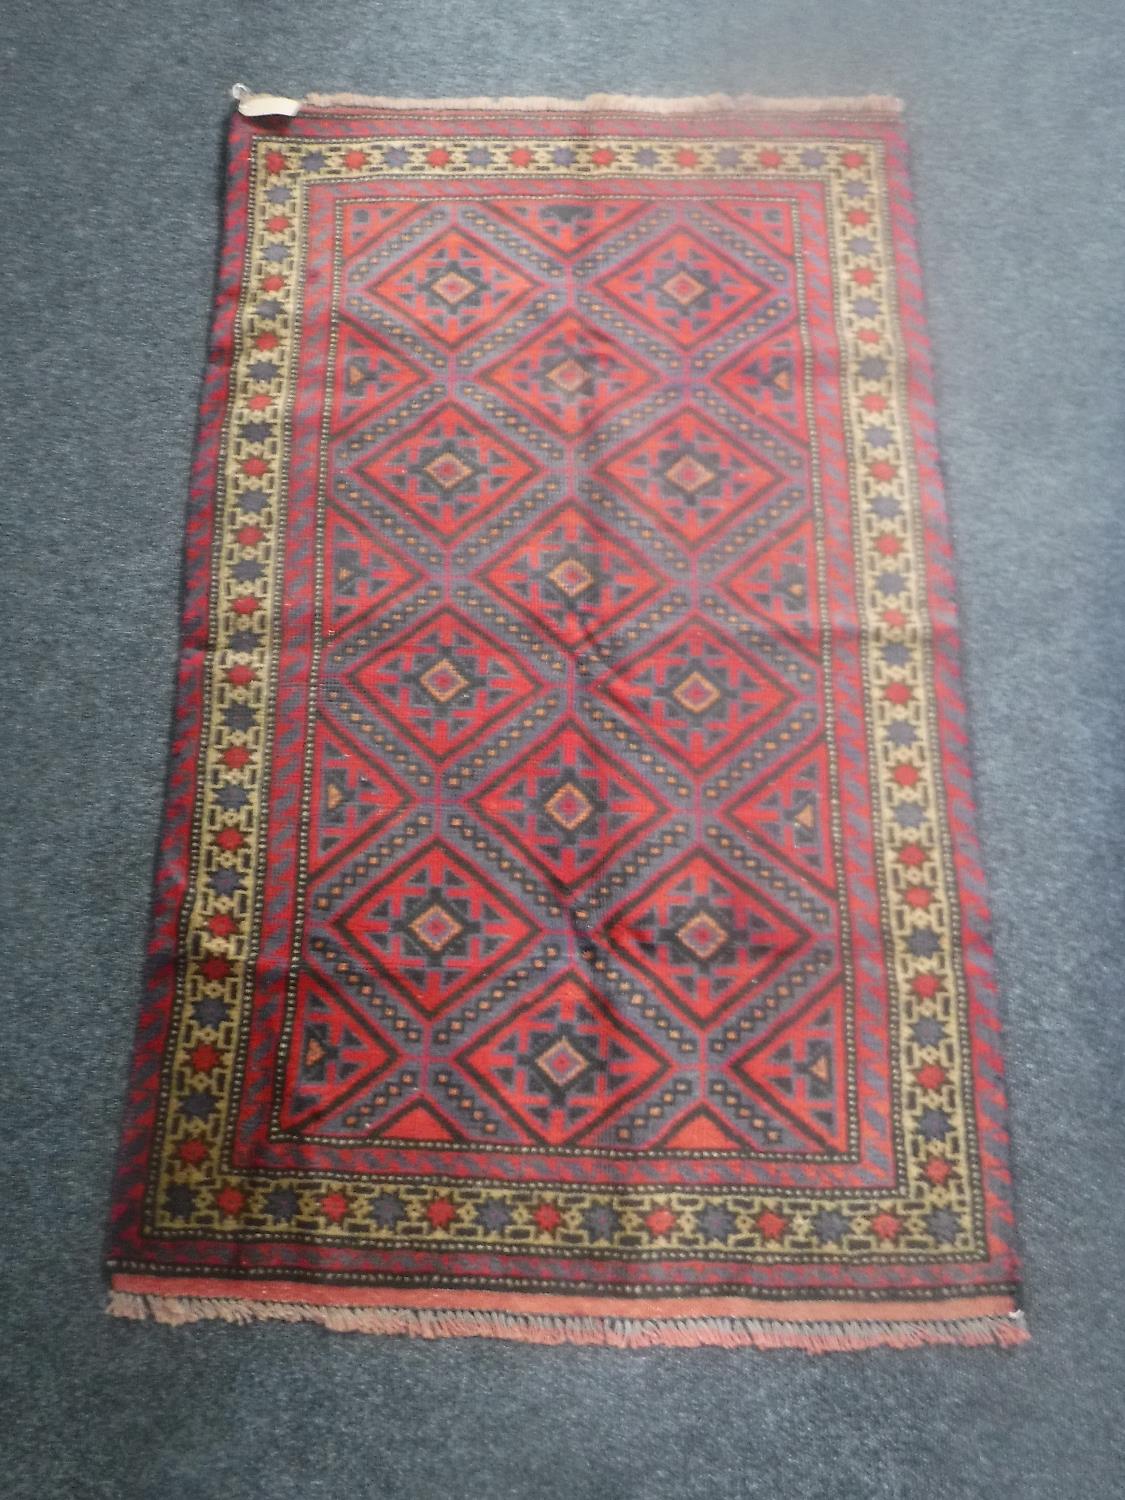 An Beluchi rug,